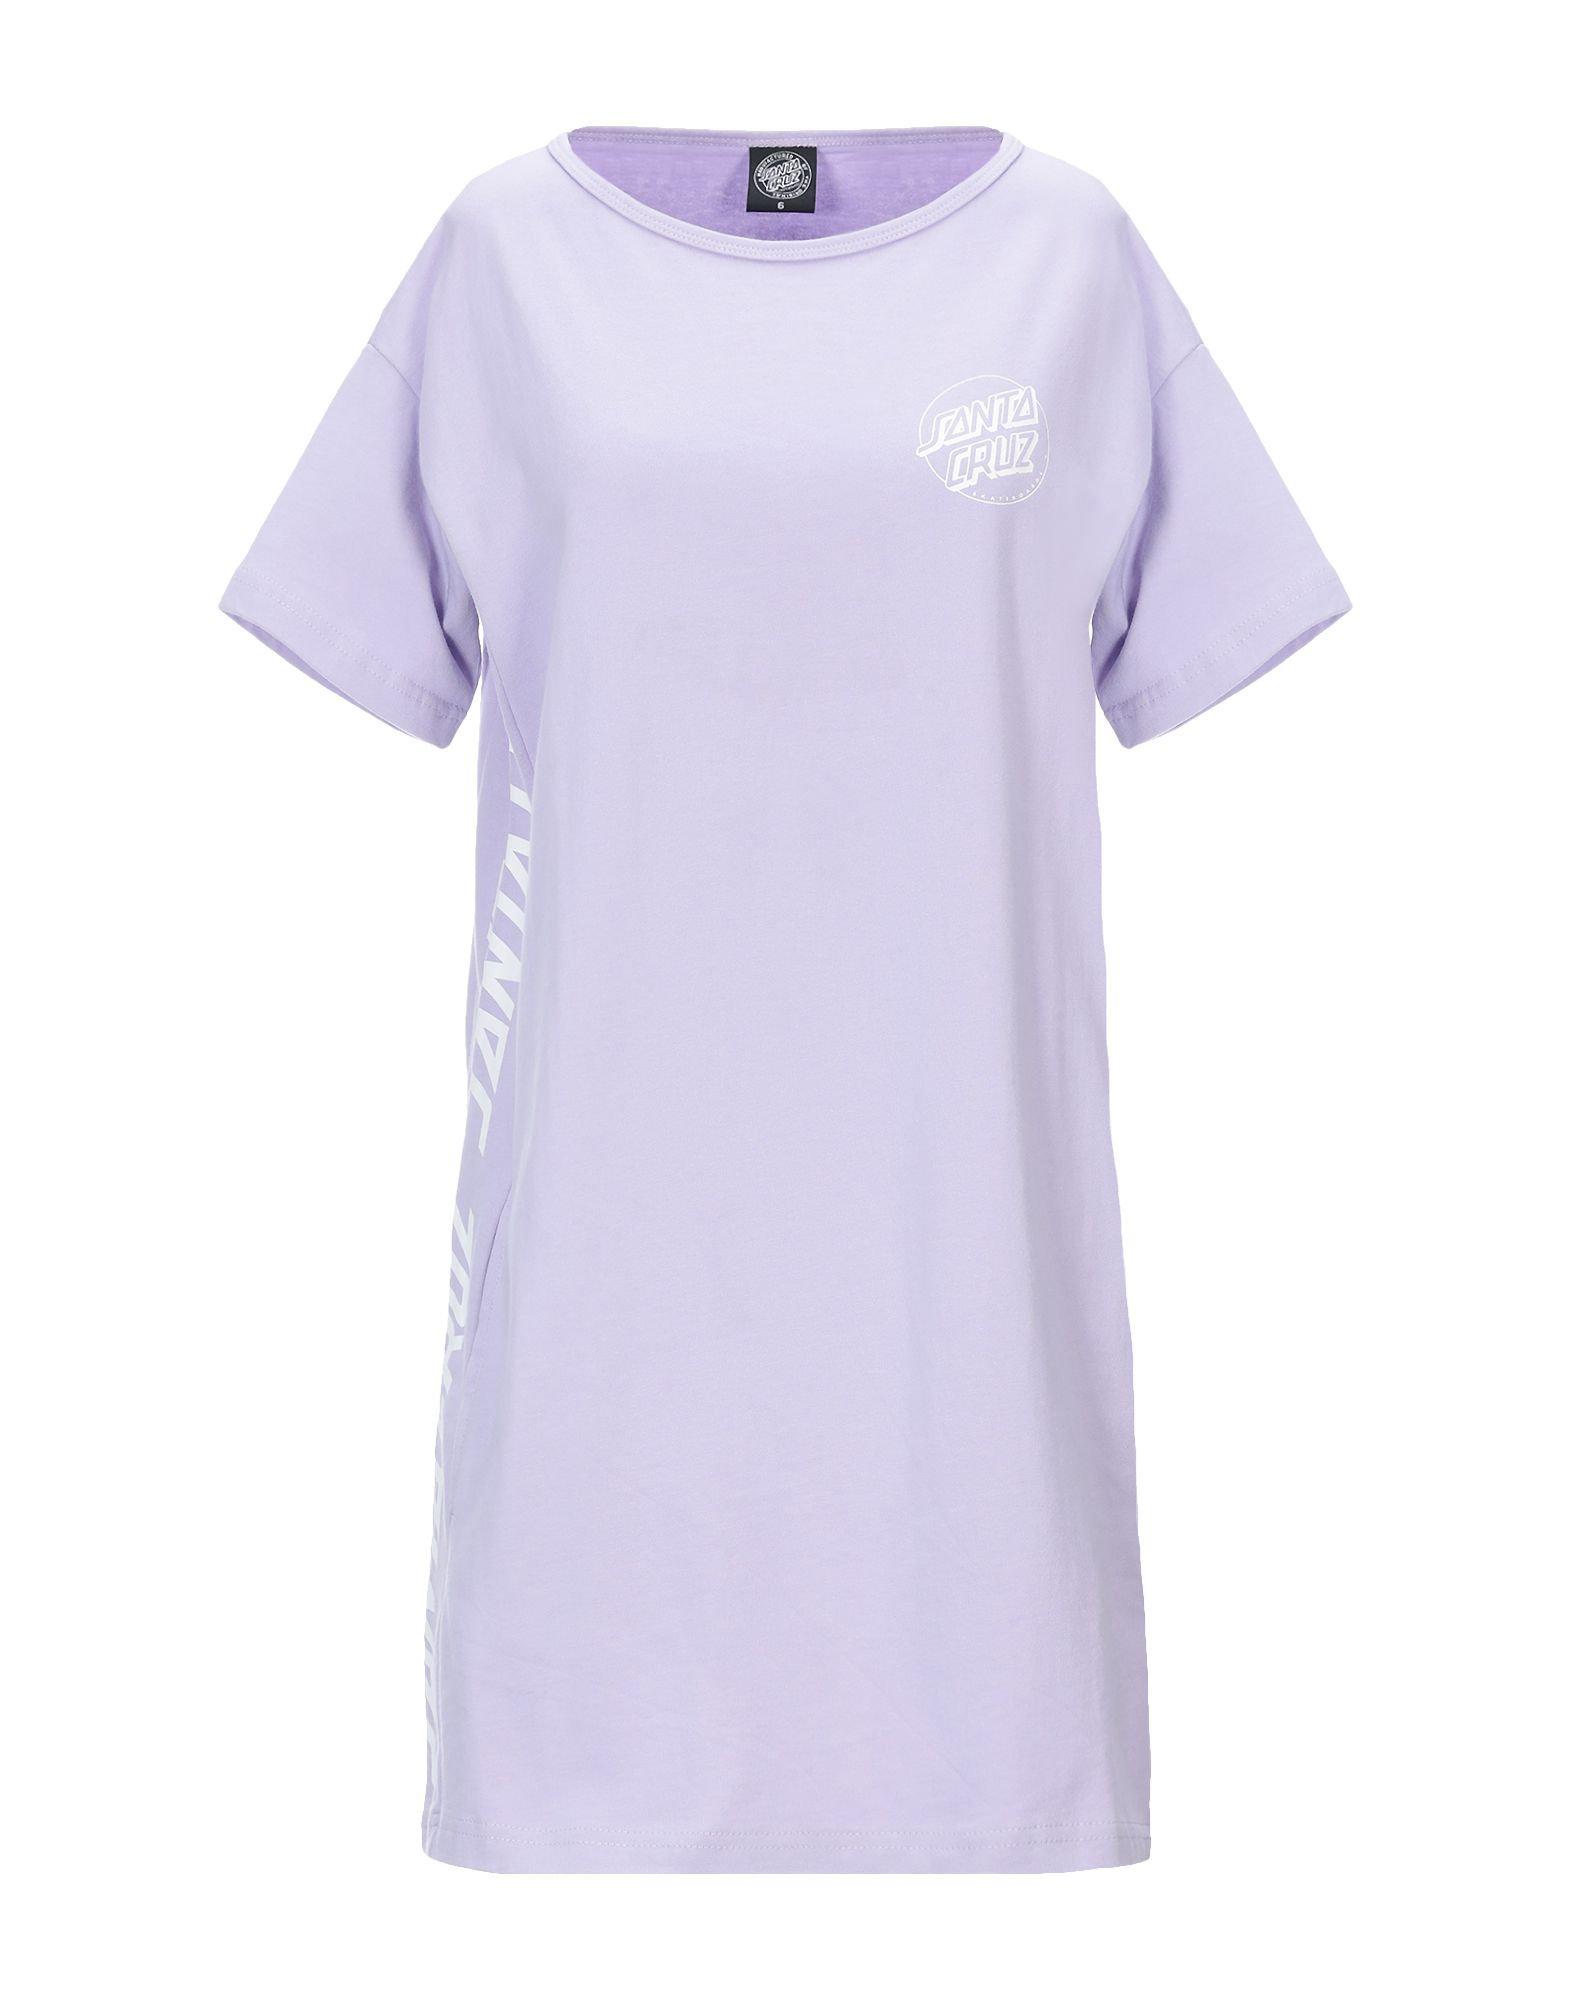 Короткое платье  - Фиолетовый цвет